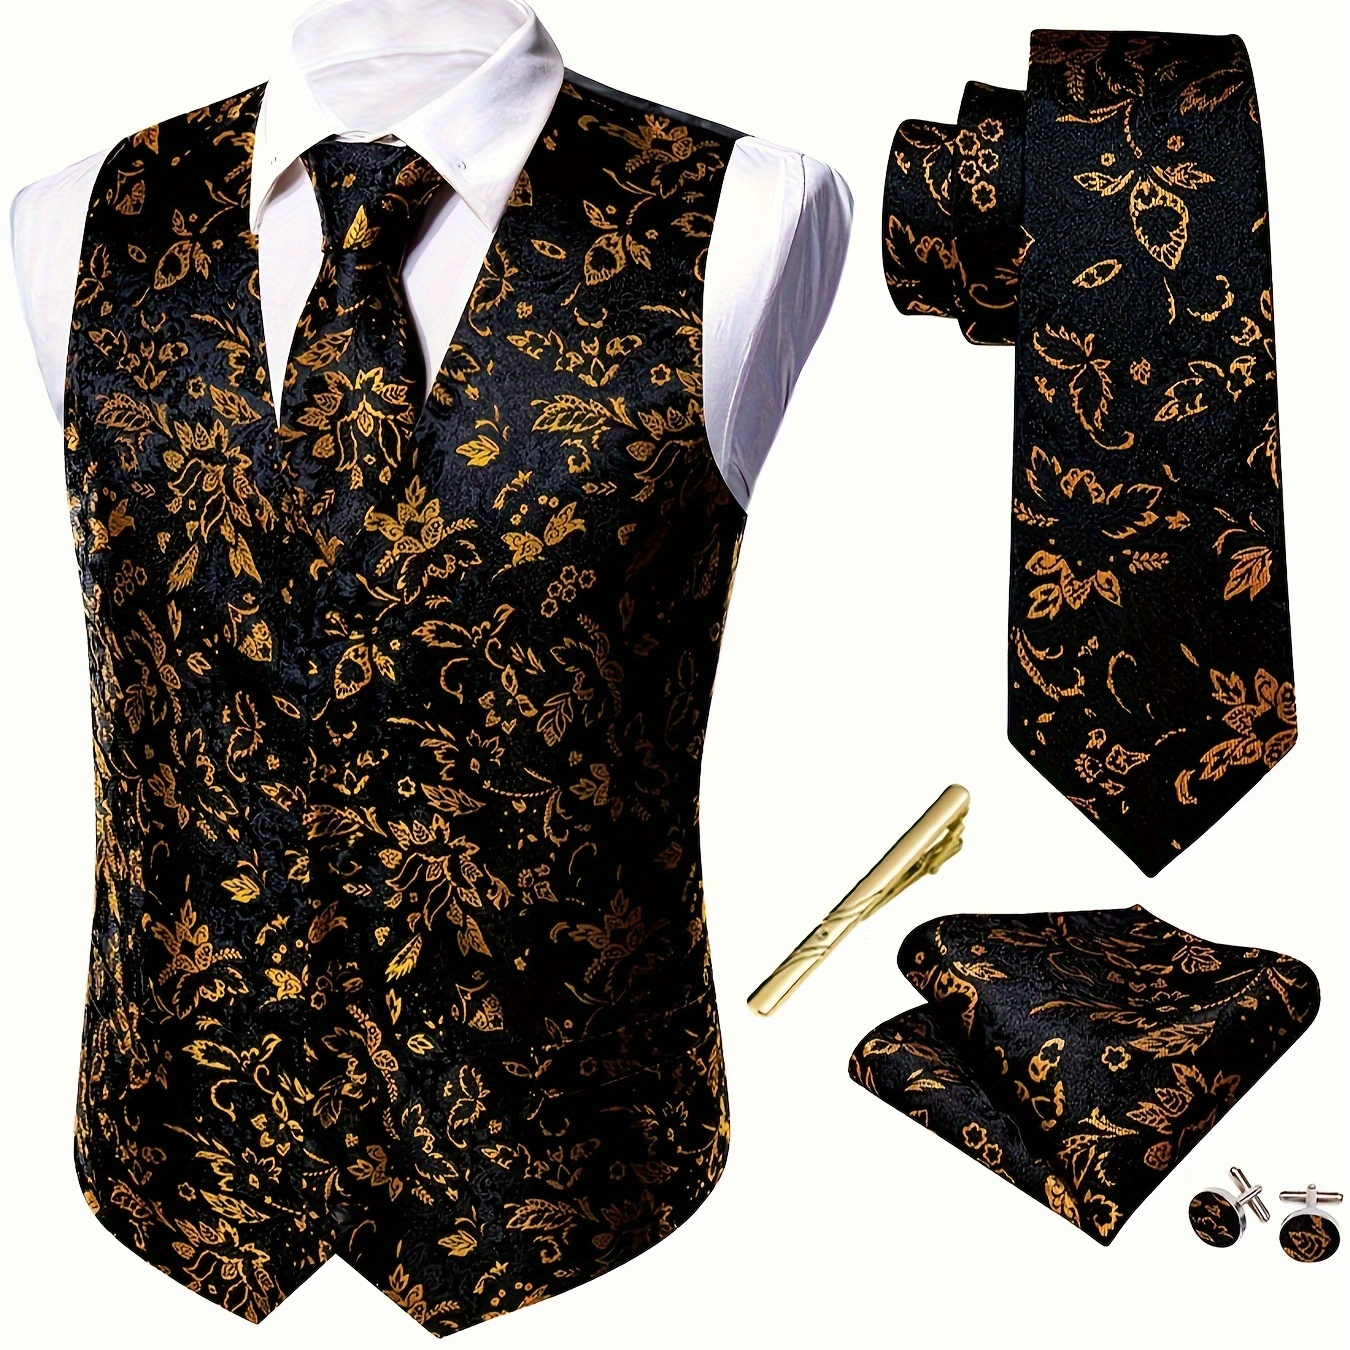 

Plus Size Men's Black&golden Paisley Suit Vest Jacquard V-neck Waistcoat Tie Set 5pcs Formal/wedding Dress Vest